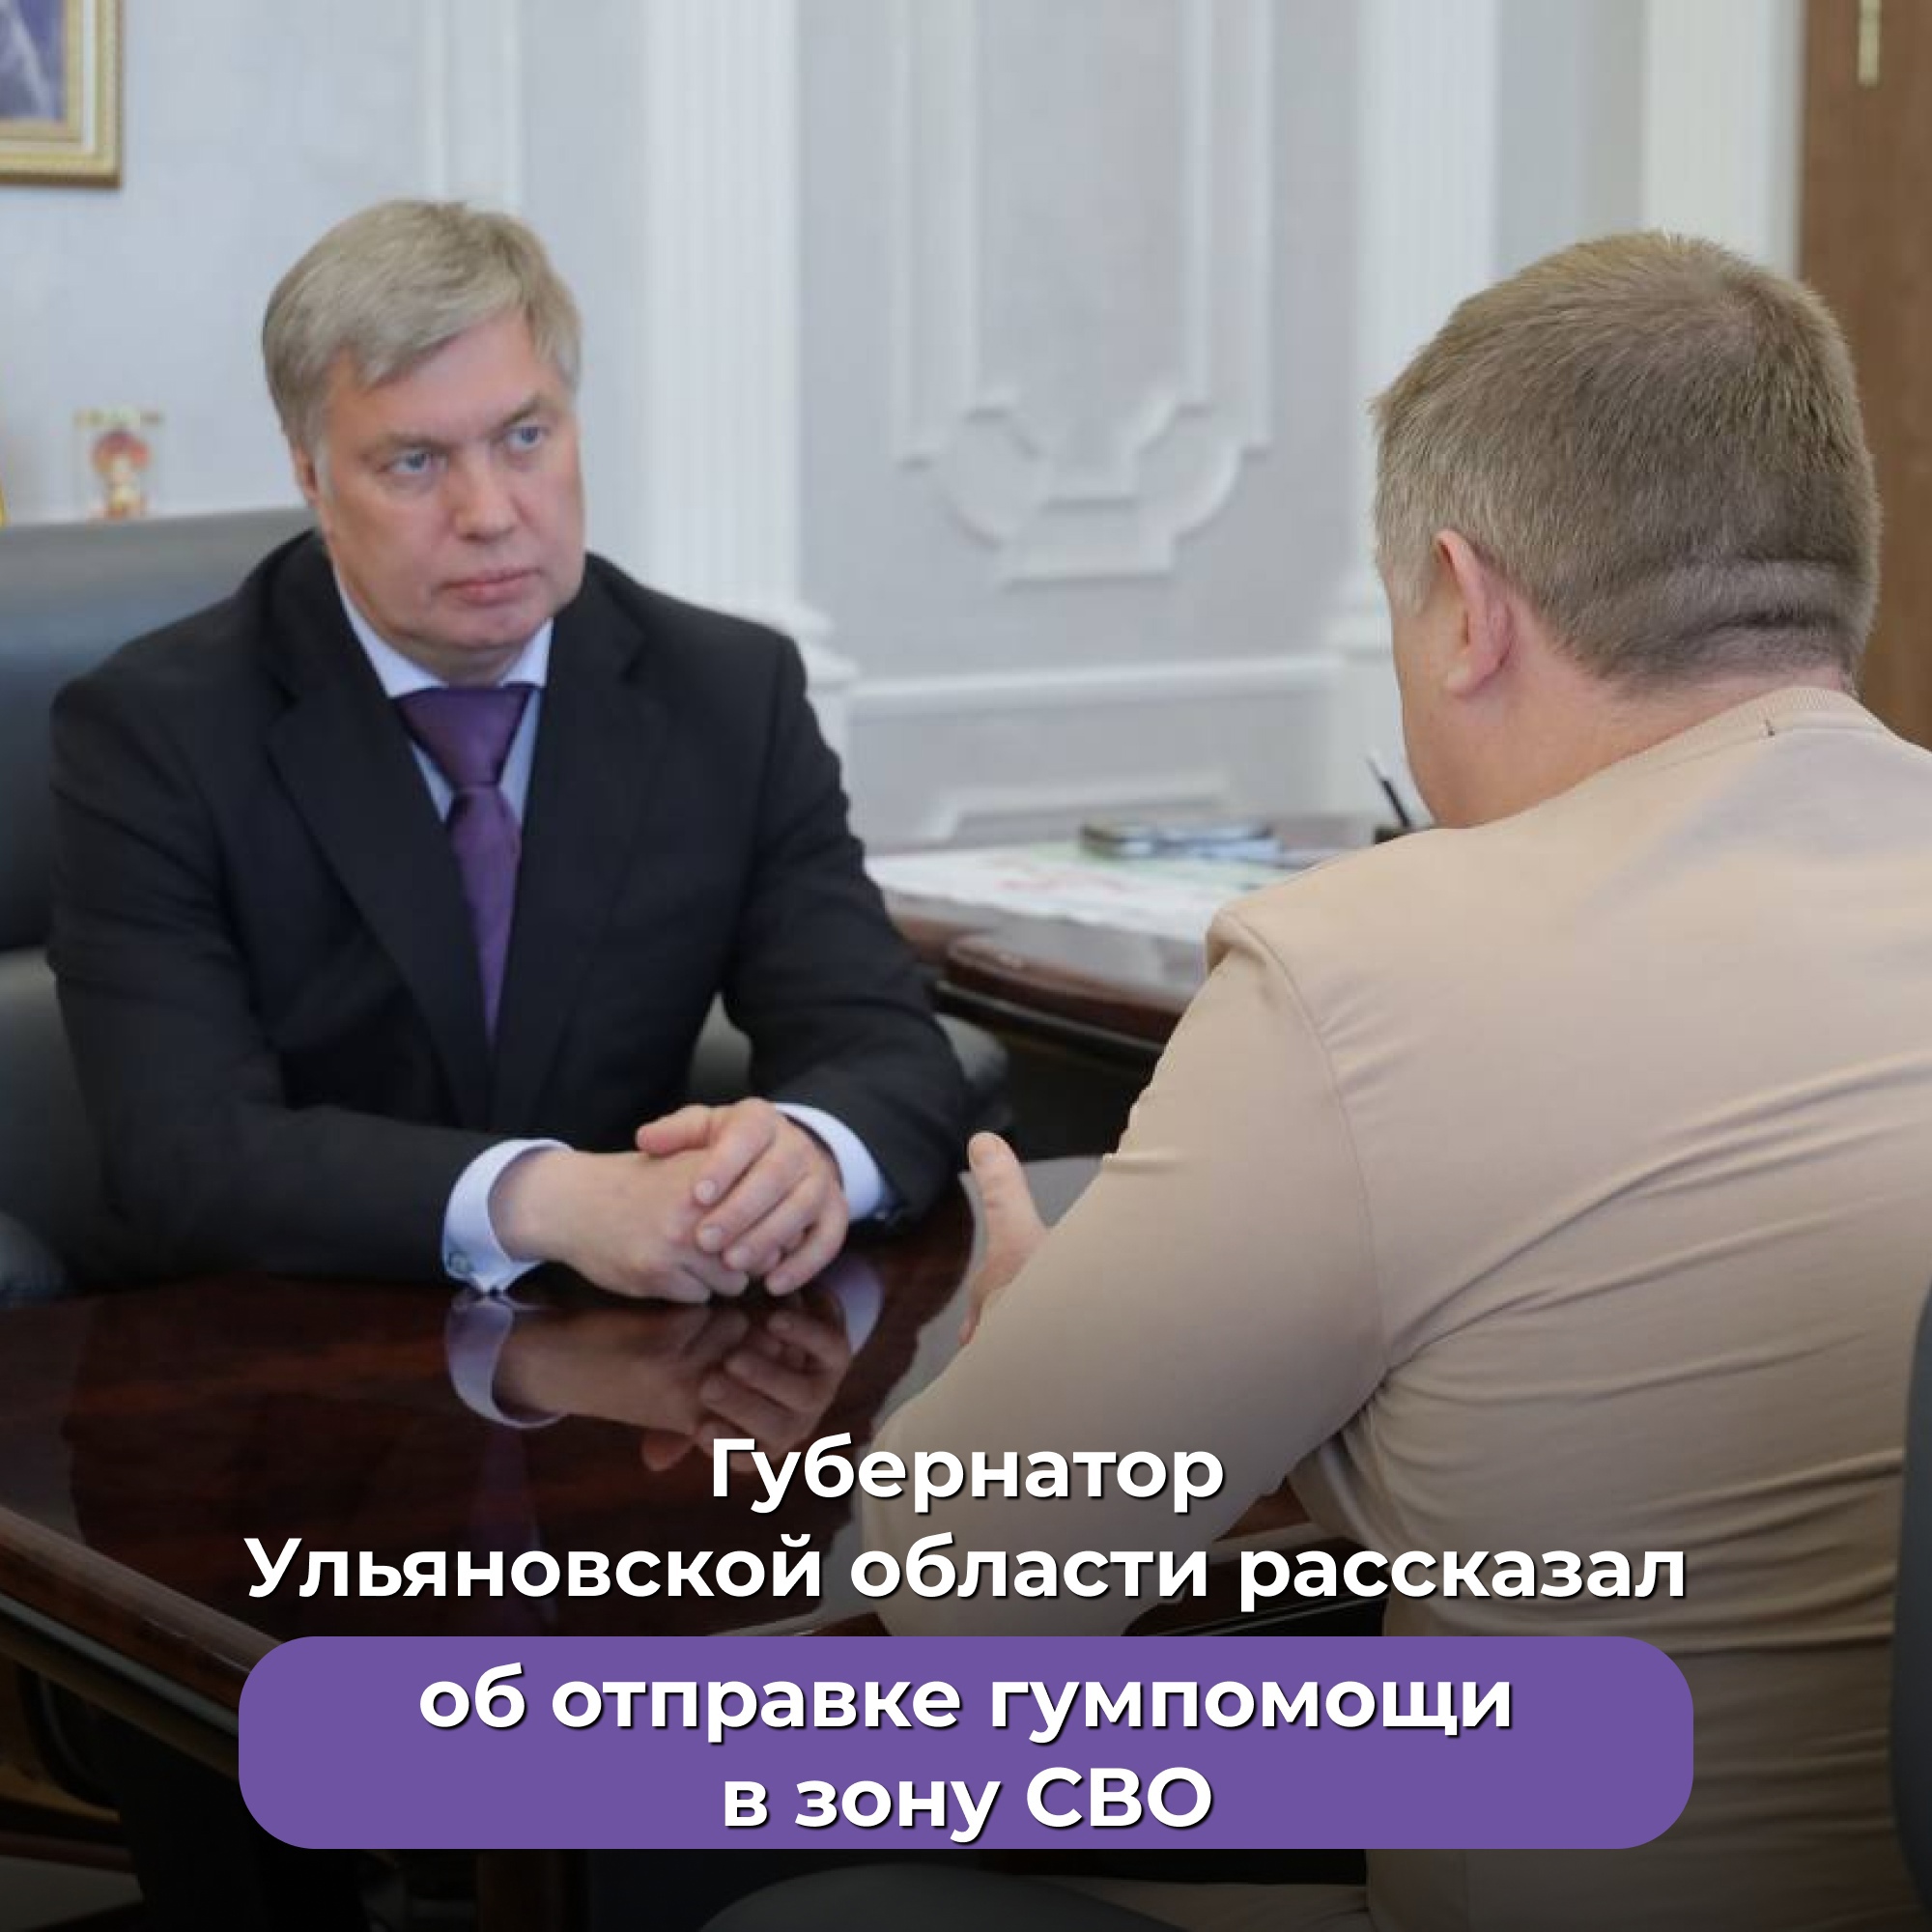 Губернатор Ульяновской области рассказал об отправке гумпомощи в зону СВО.